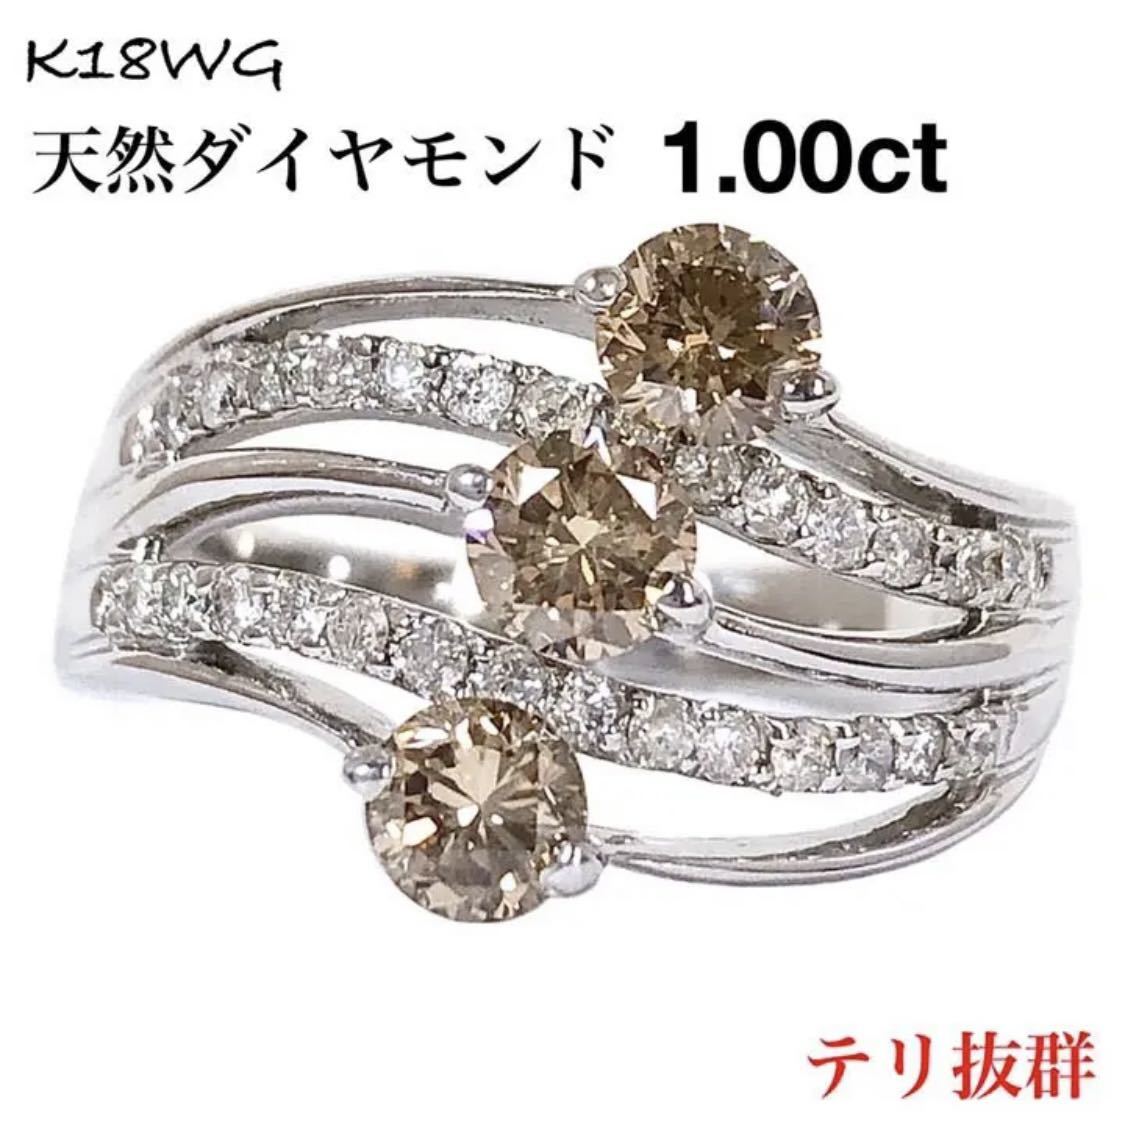 最高級 ブラウン ダイヤ 1.00ct K18WG ダイヤモンド リング 指輪